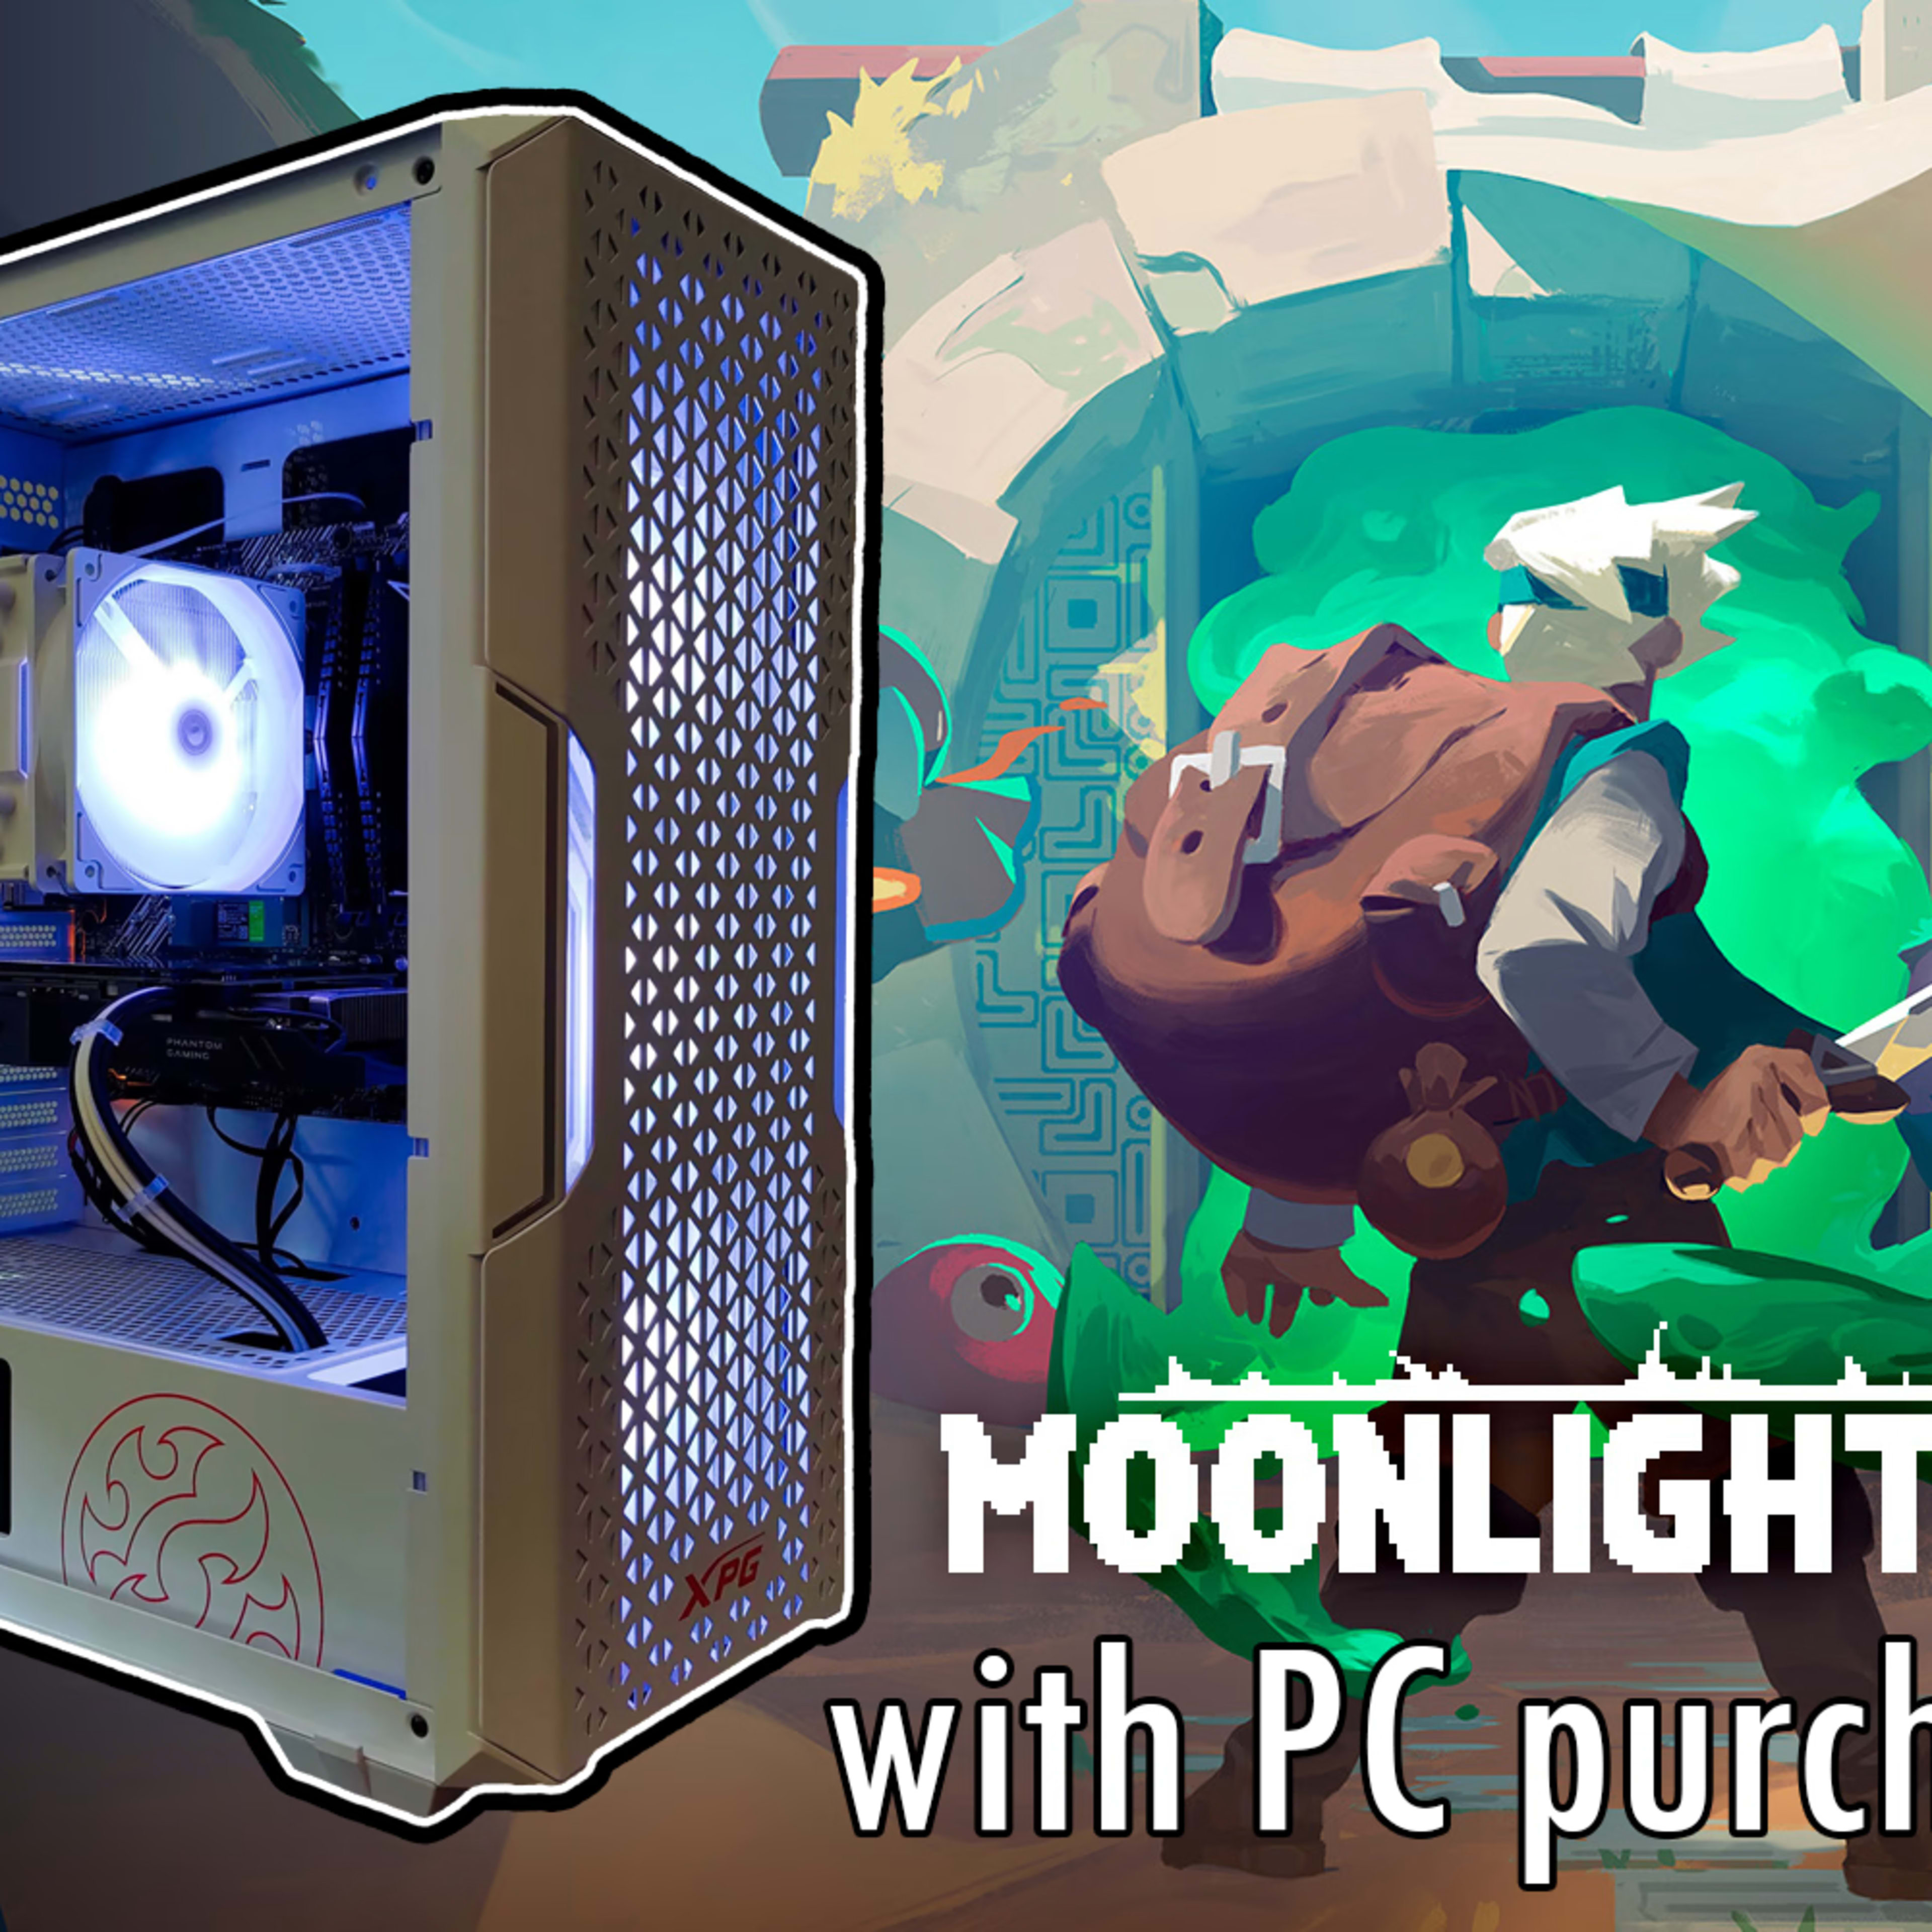 燦然 Sanzen | White 5600G + RX 590 Gaming PC | Moonlighter Included!